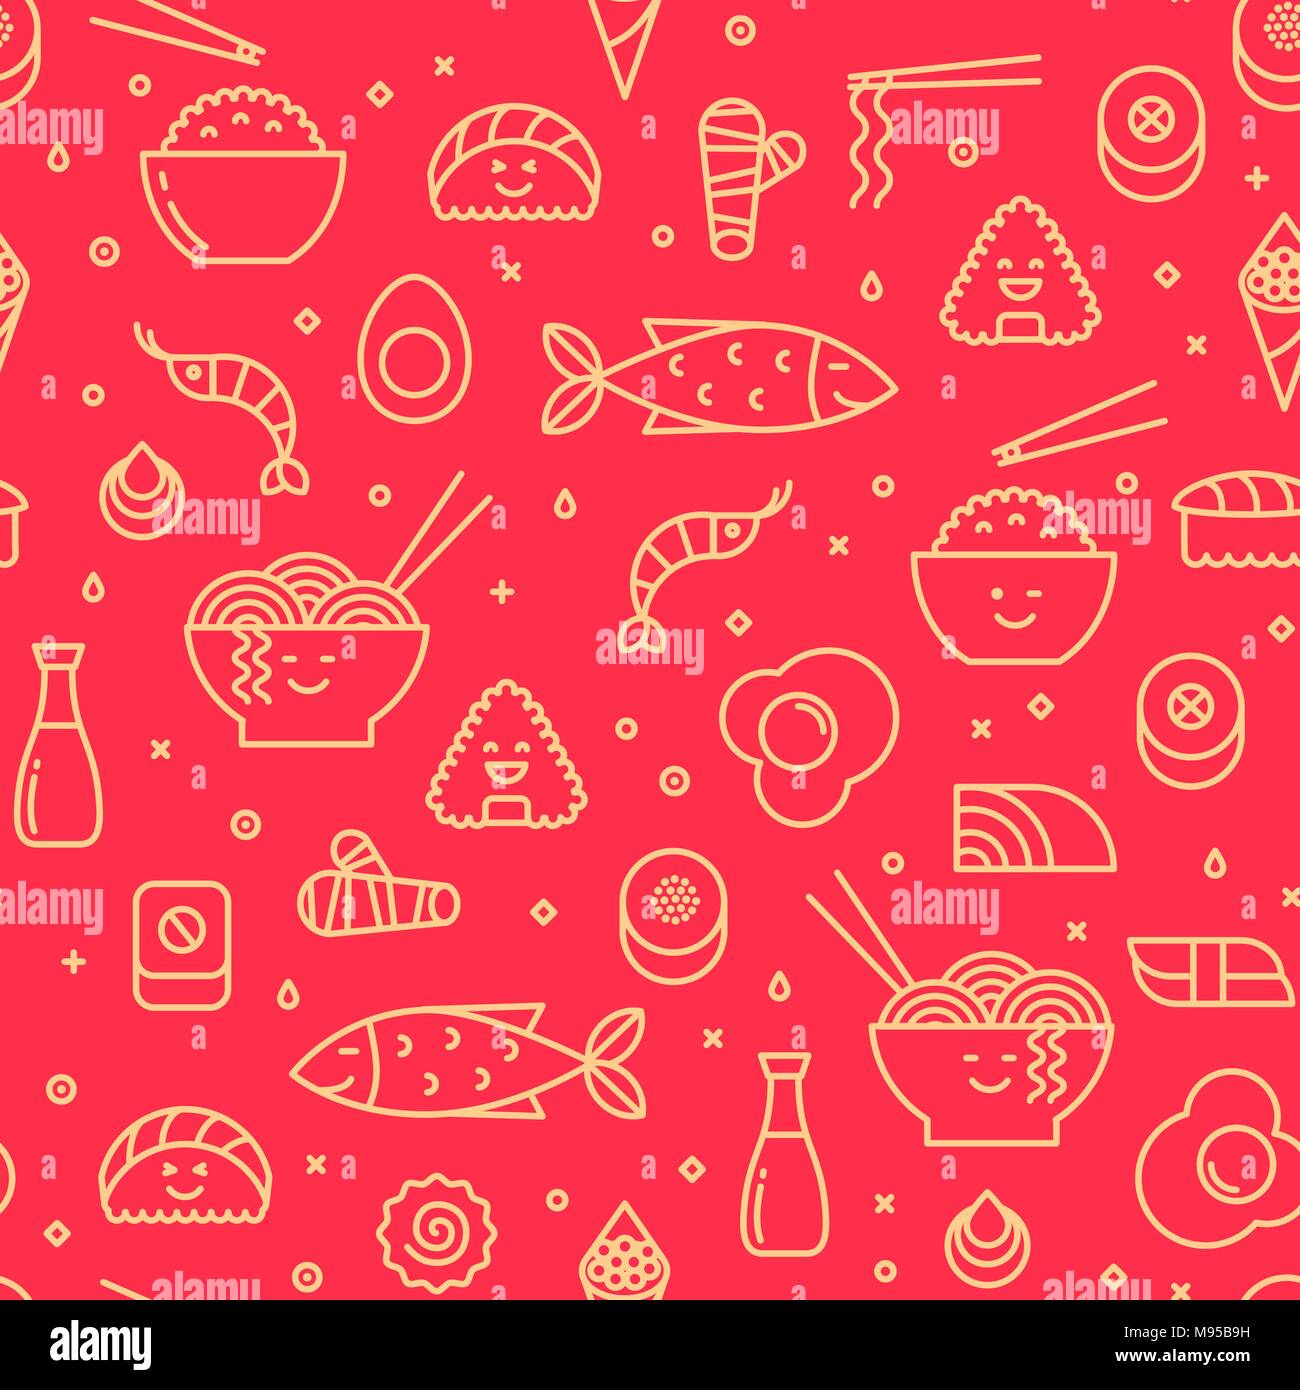 Vettore di divertimento seamless pattern con il cibo giapponese come il sushi, riso, rotoli, pesce. I colori rosso e giallo. Facce sorridenti, iconico stile linea, art. Illustrazione Vettoriale